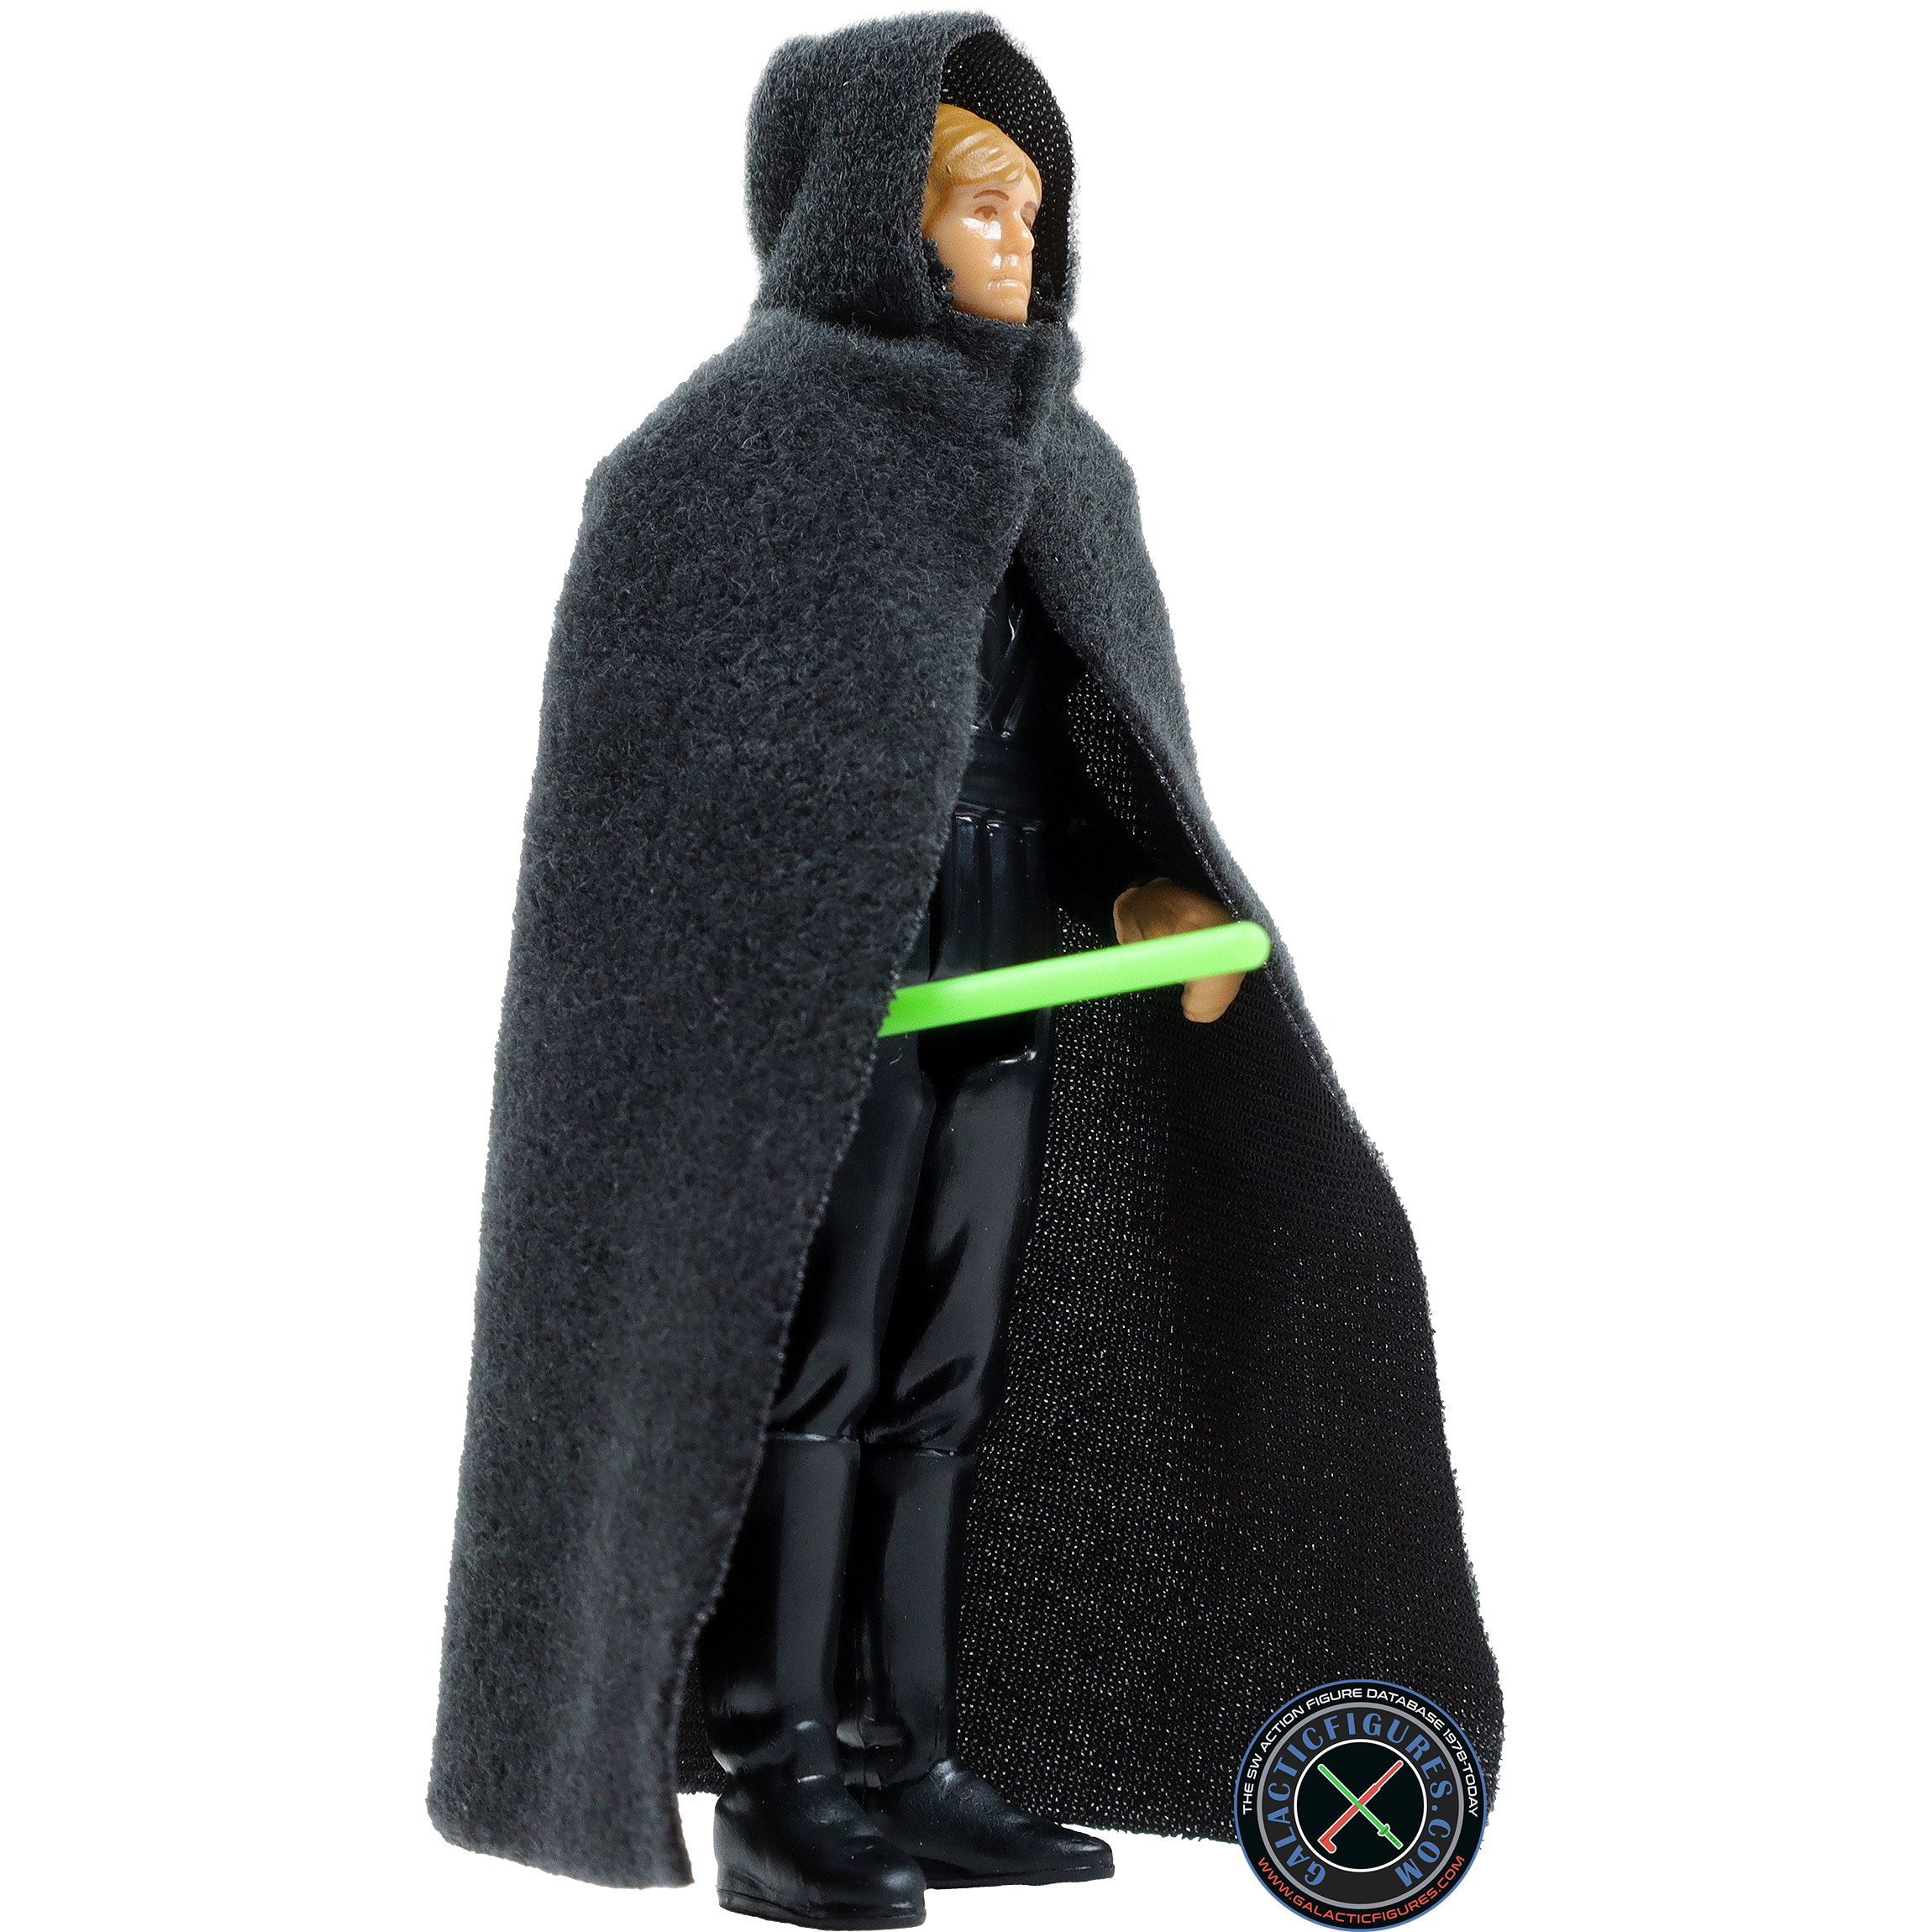 Luke Skywalker Jedi Academy